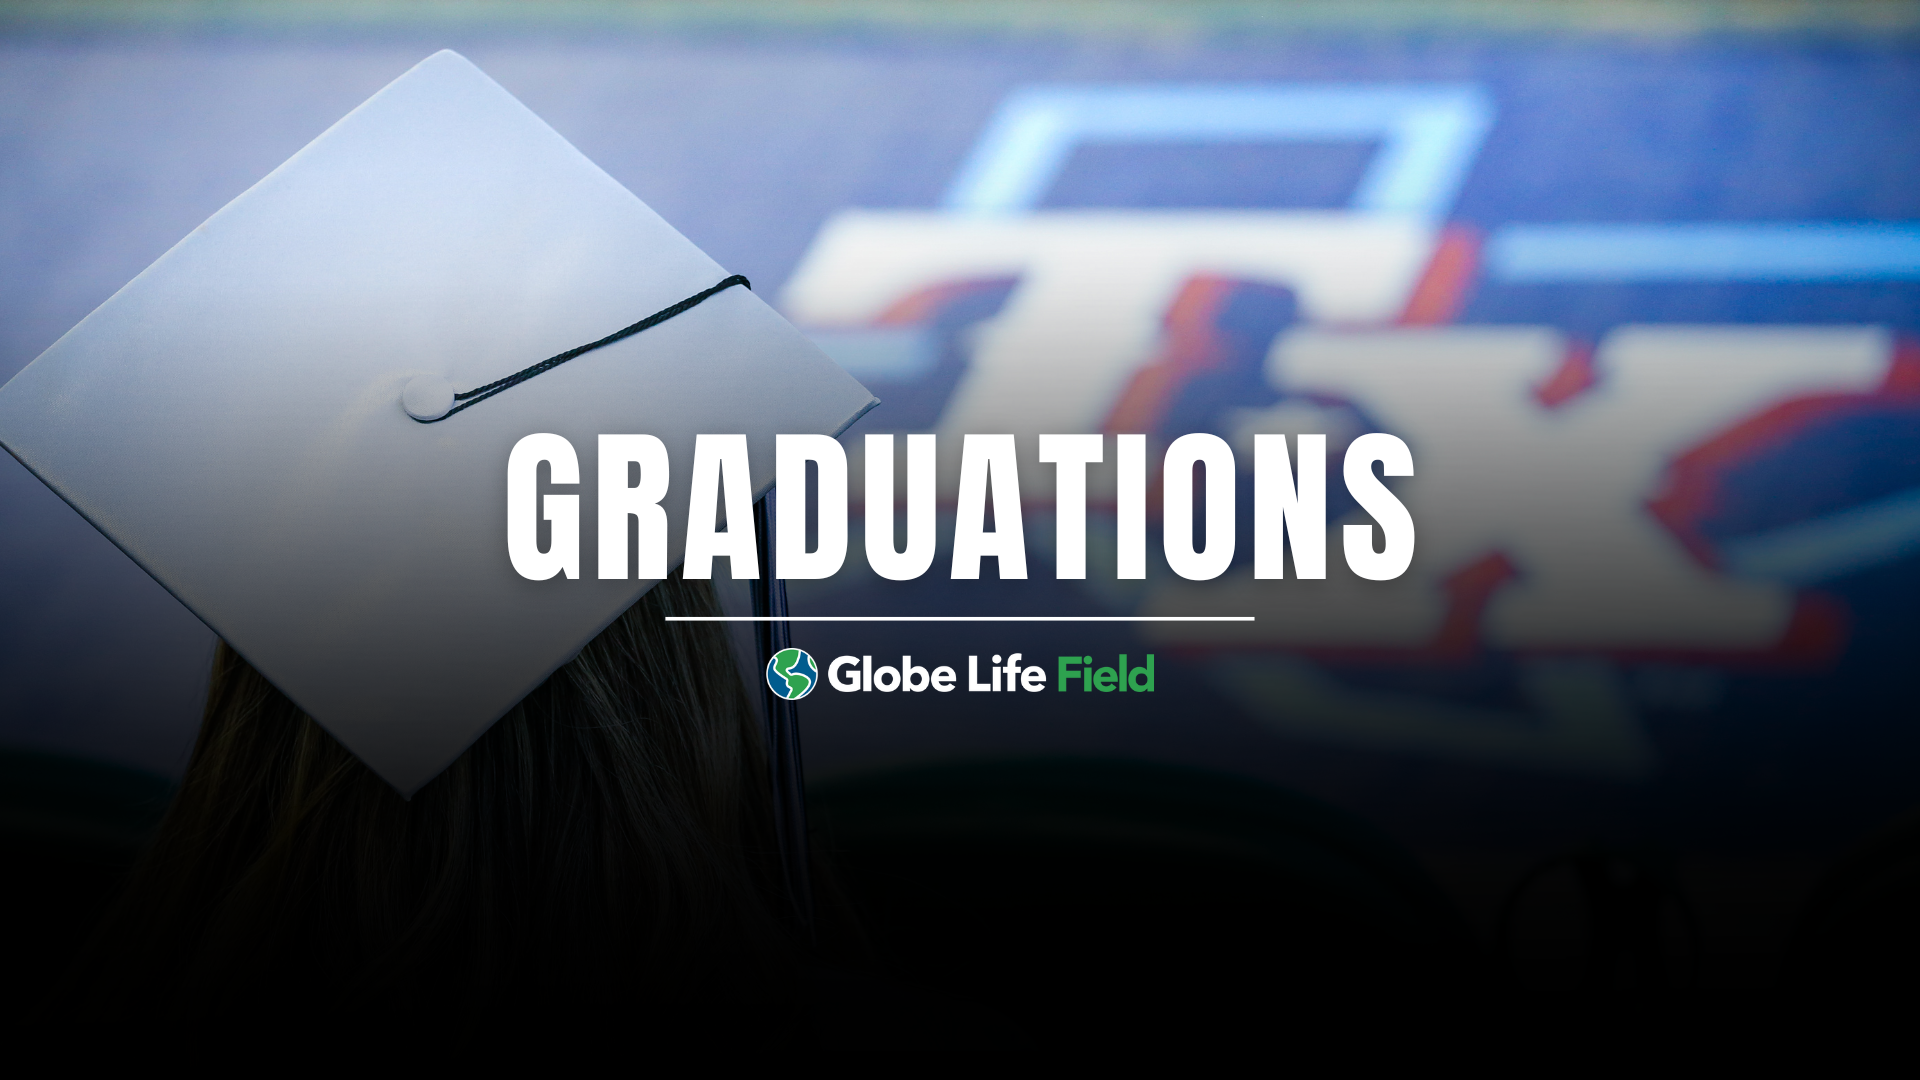 Graduations at Globe Life field